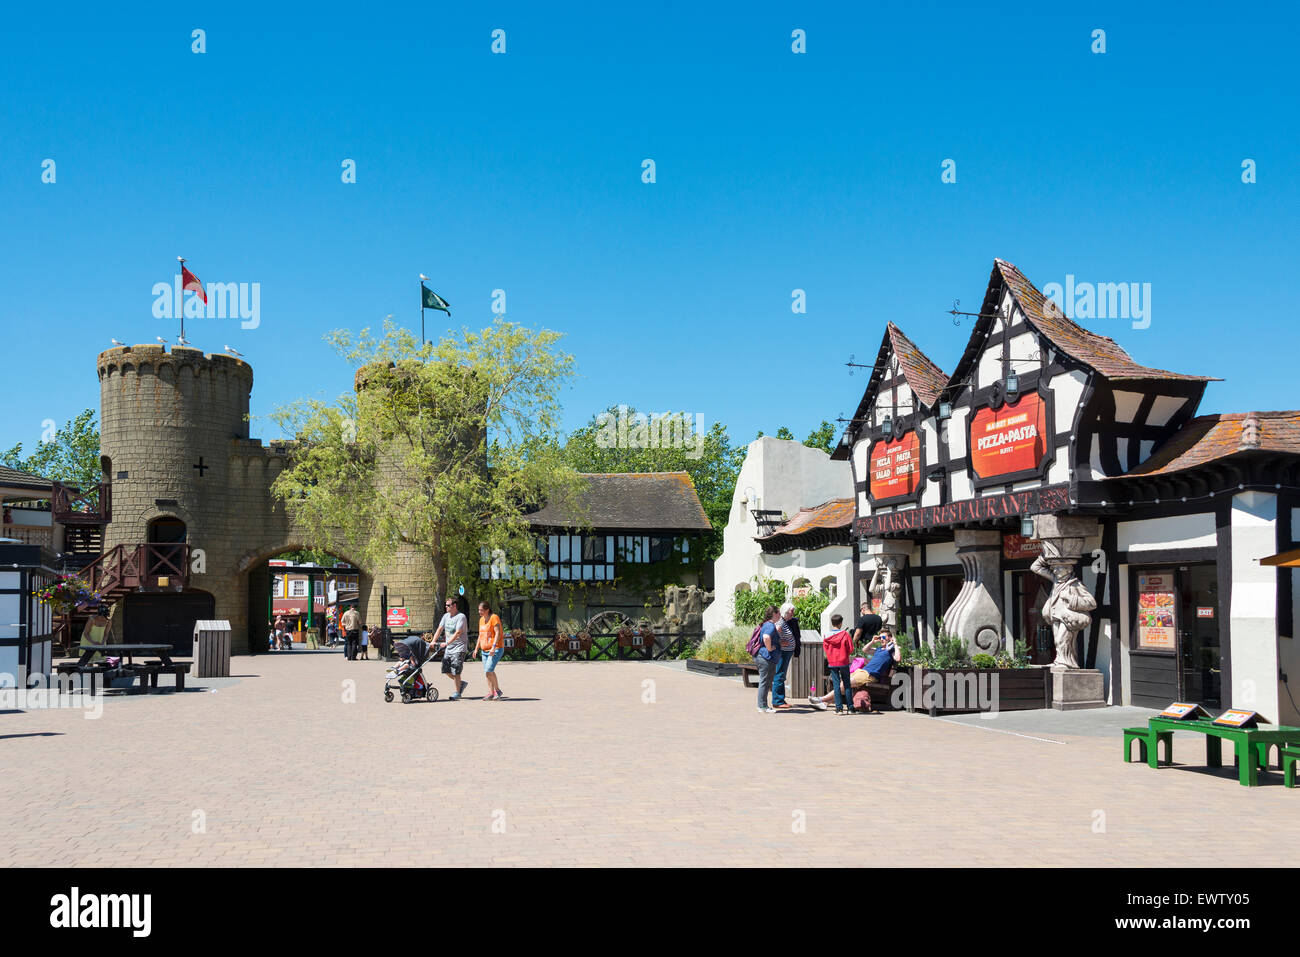 Place du marché, Chessington World of Adventures, le parc à thème Chessington, Surrey, Angleterre, Royaume-Uni Banque D'Images